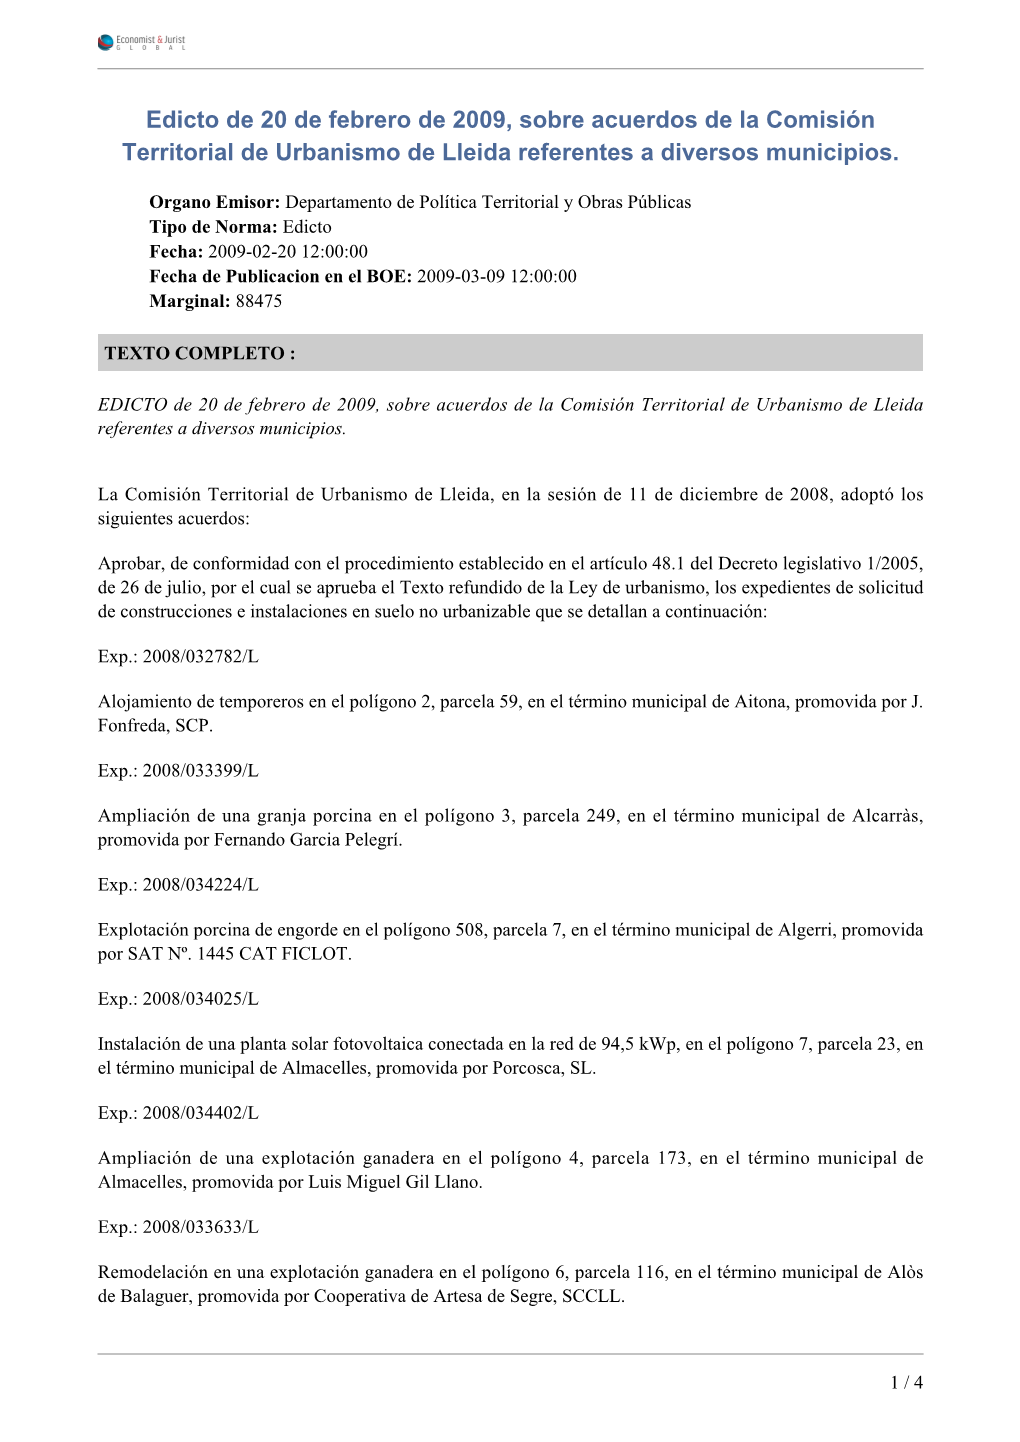 Edicto De 20 De Febrero De 2009, Sobre Acuerdos De La Comisión Territorial De Urbanismo De Lleida Referentes a Diversos Municipios